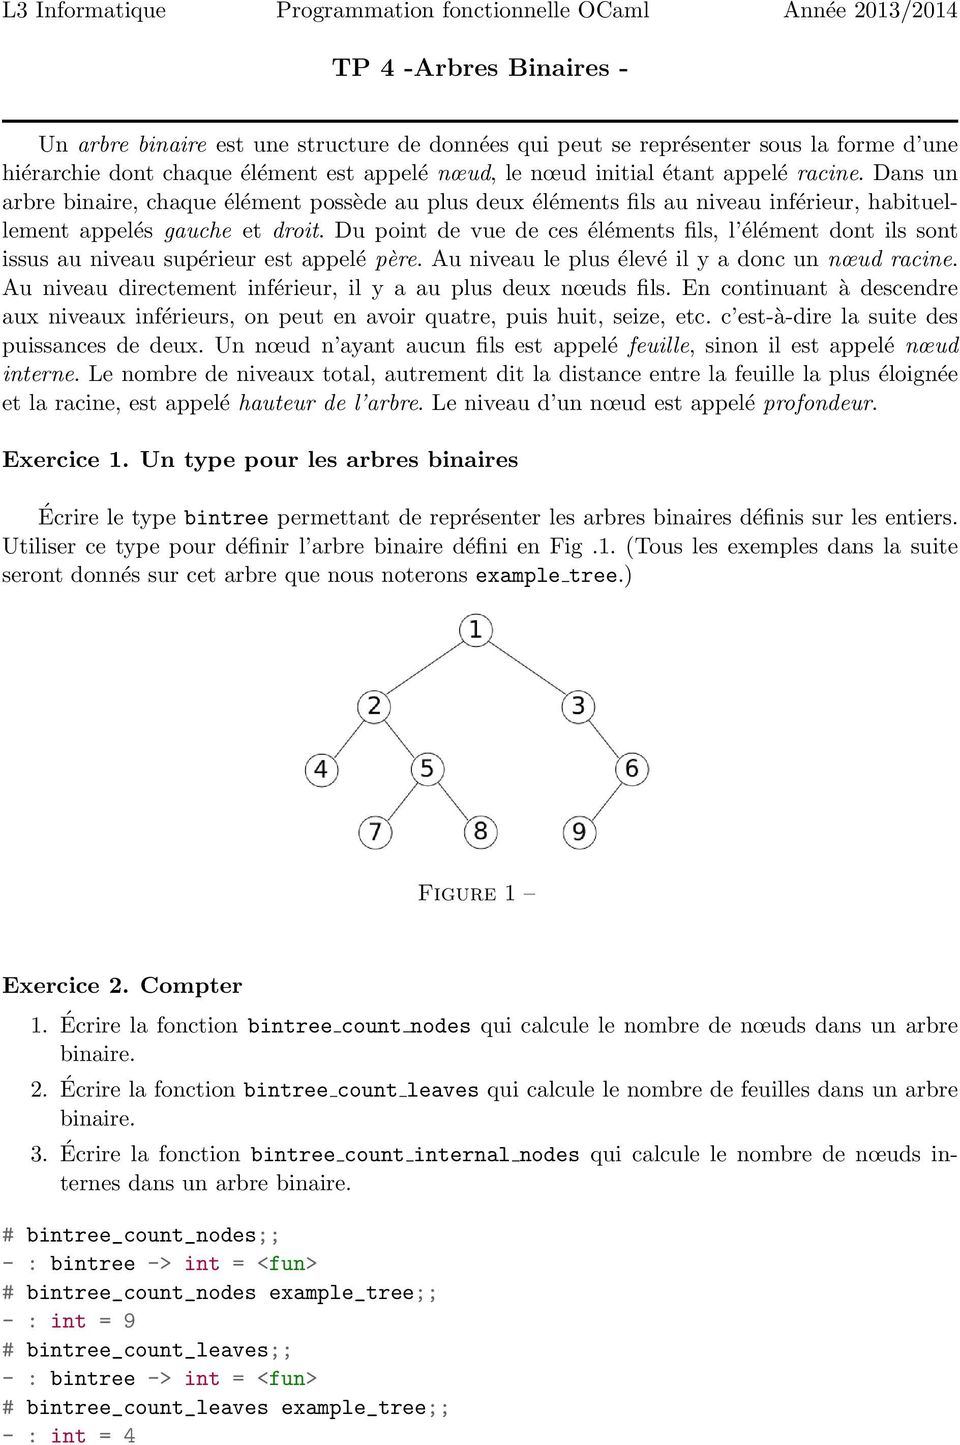 Dans un arbre binaire, chaque élément possède au plus deux éléments fils au niveau inférieur, habituellement appelés gauche et droit.